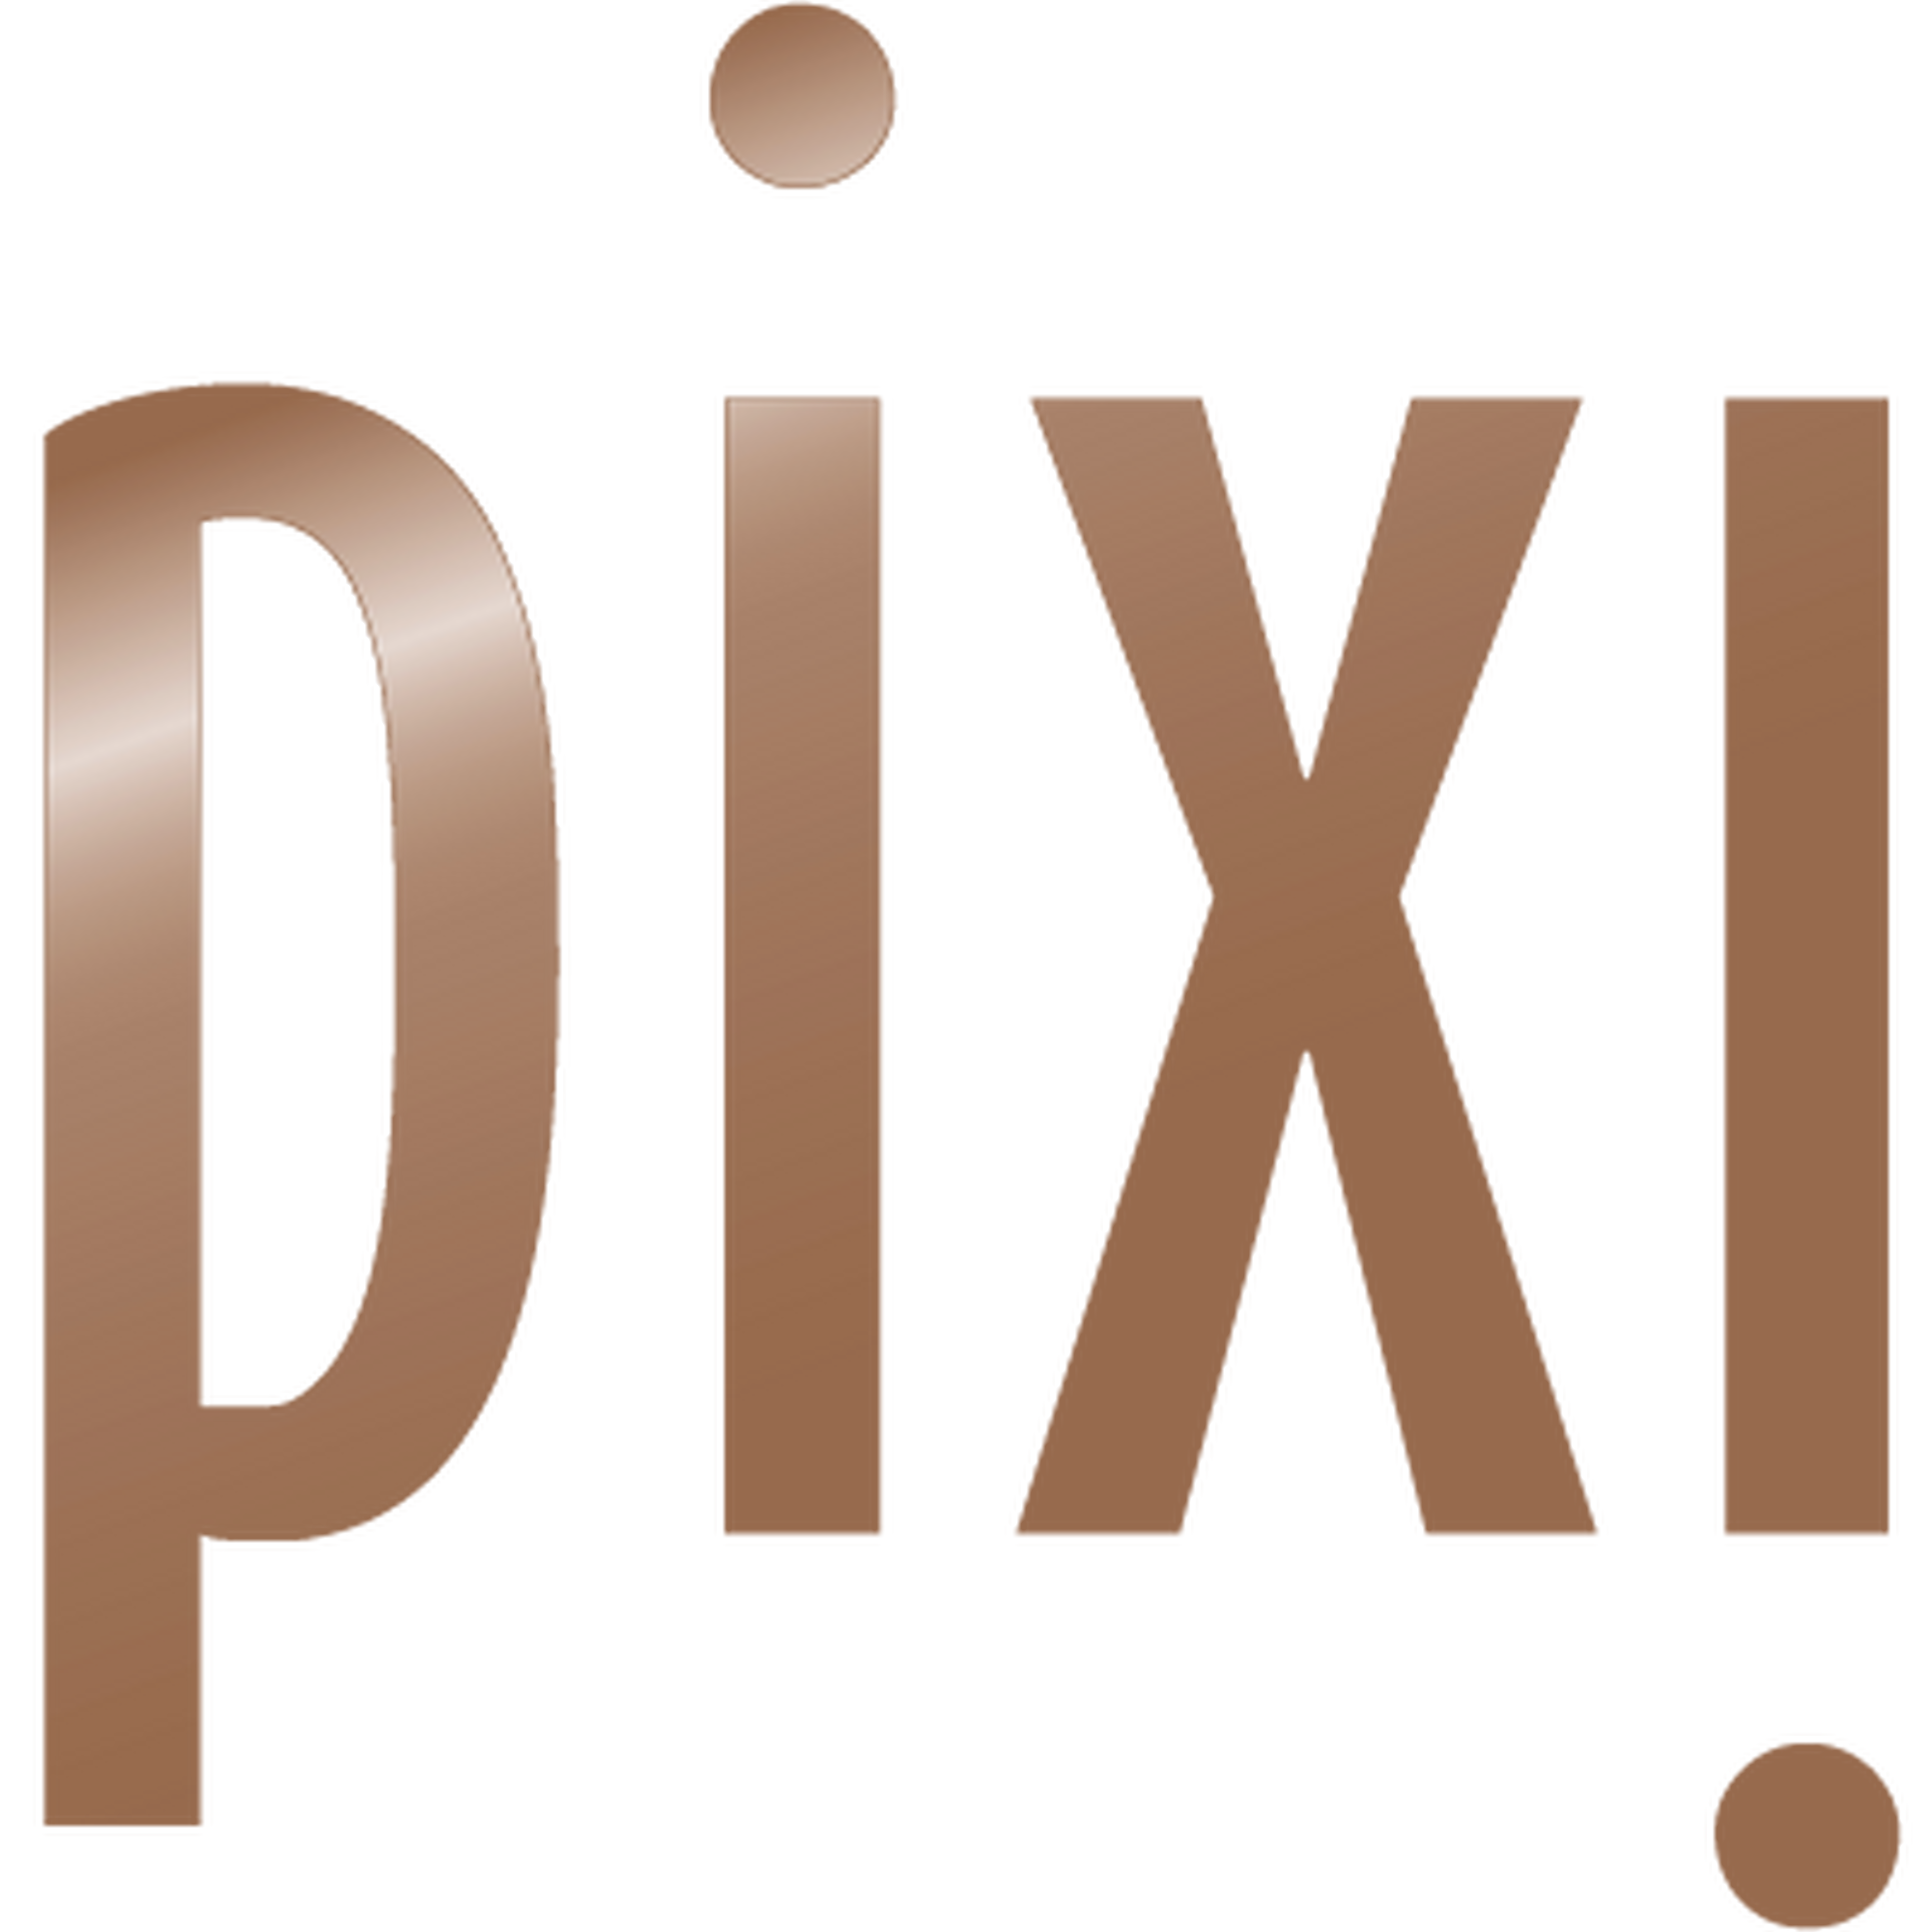 Pixi logotype